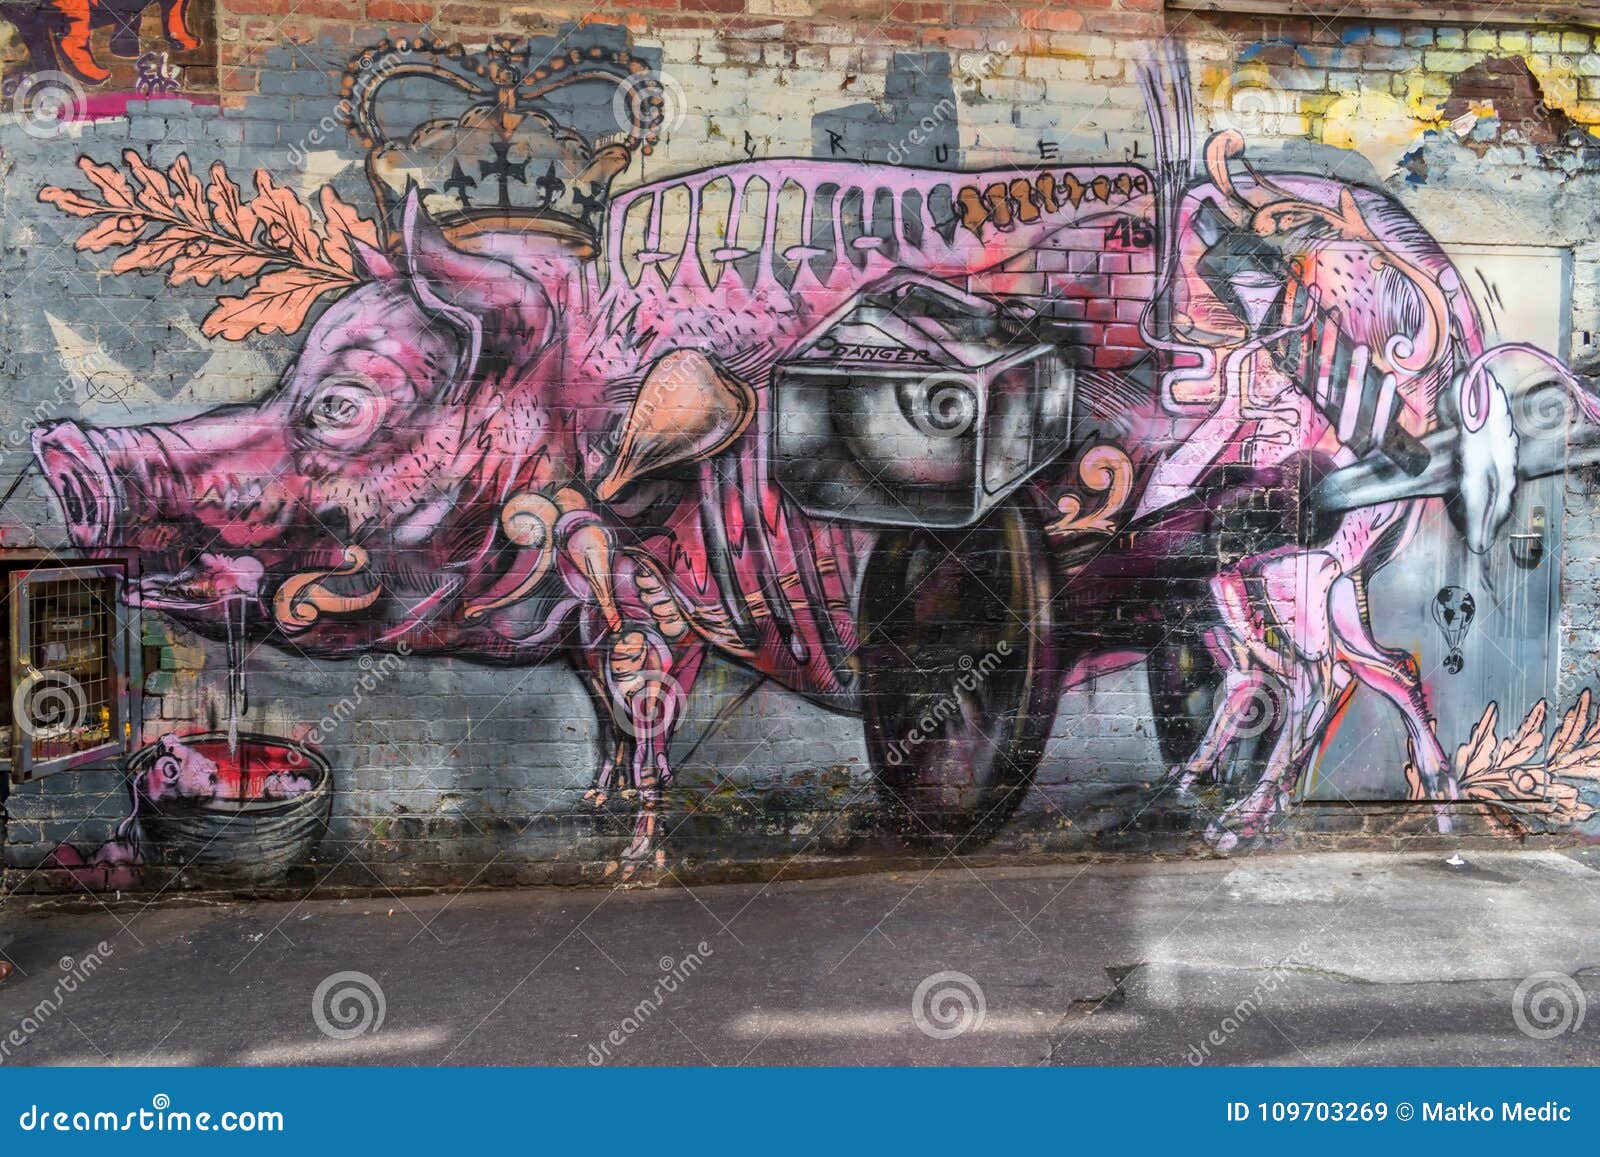 граффити свинья стим фото 7